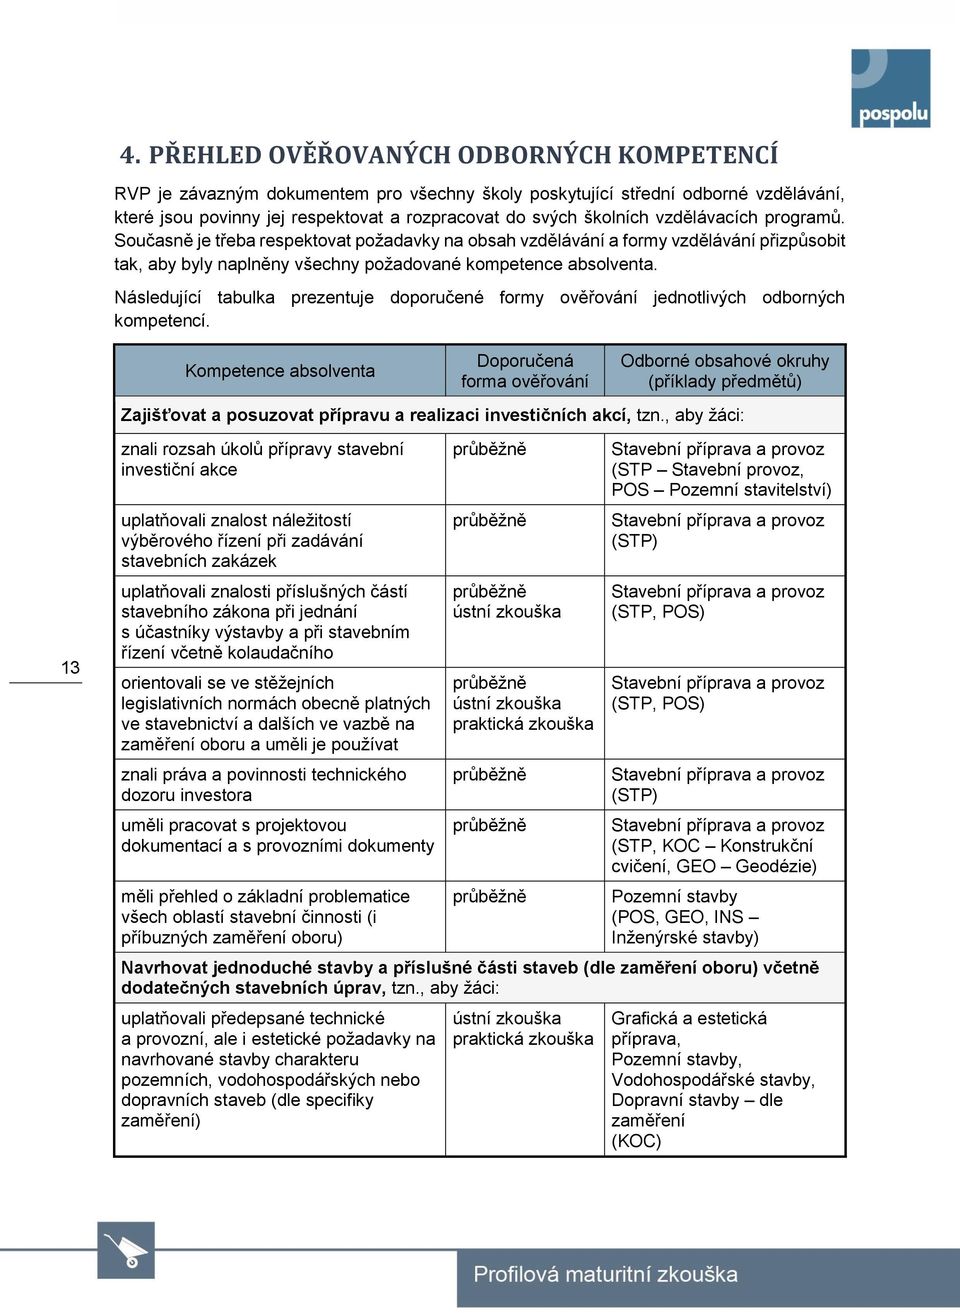 Následující tabulka prezentuje doporučené formy ověřování jednotlivých odborných kompetencí.